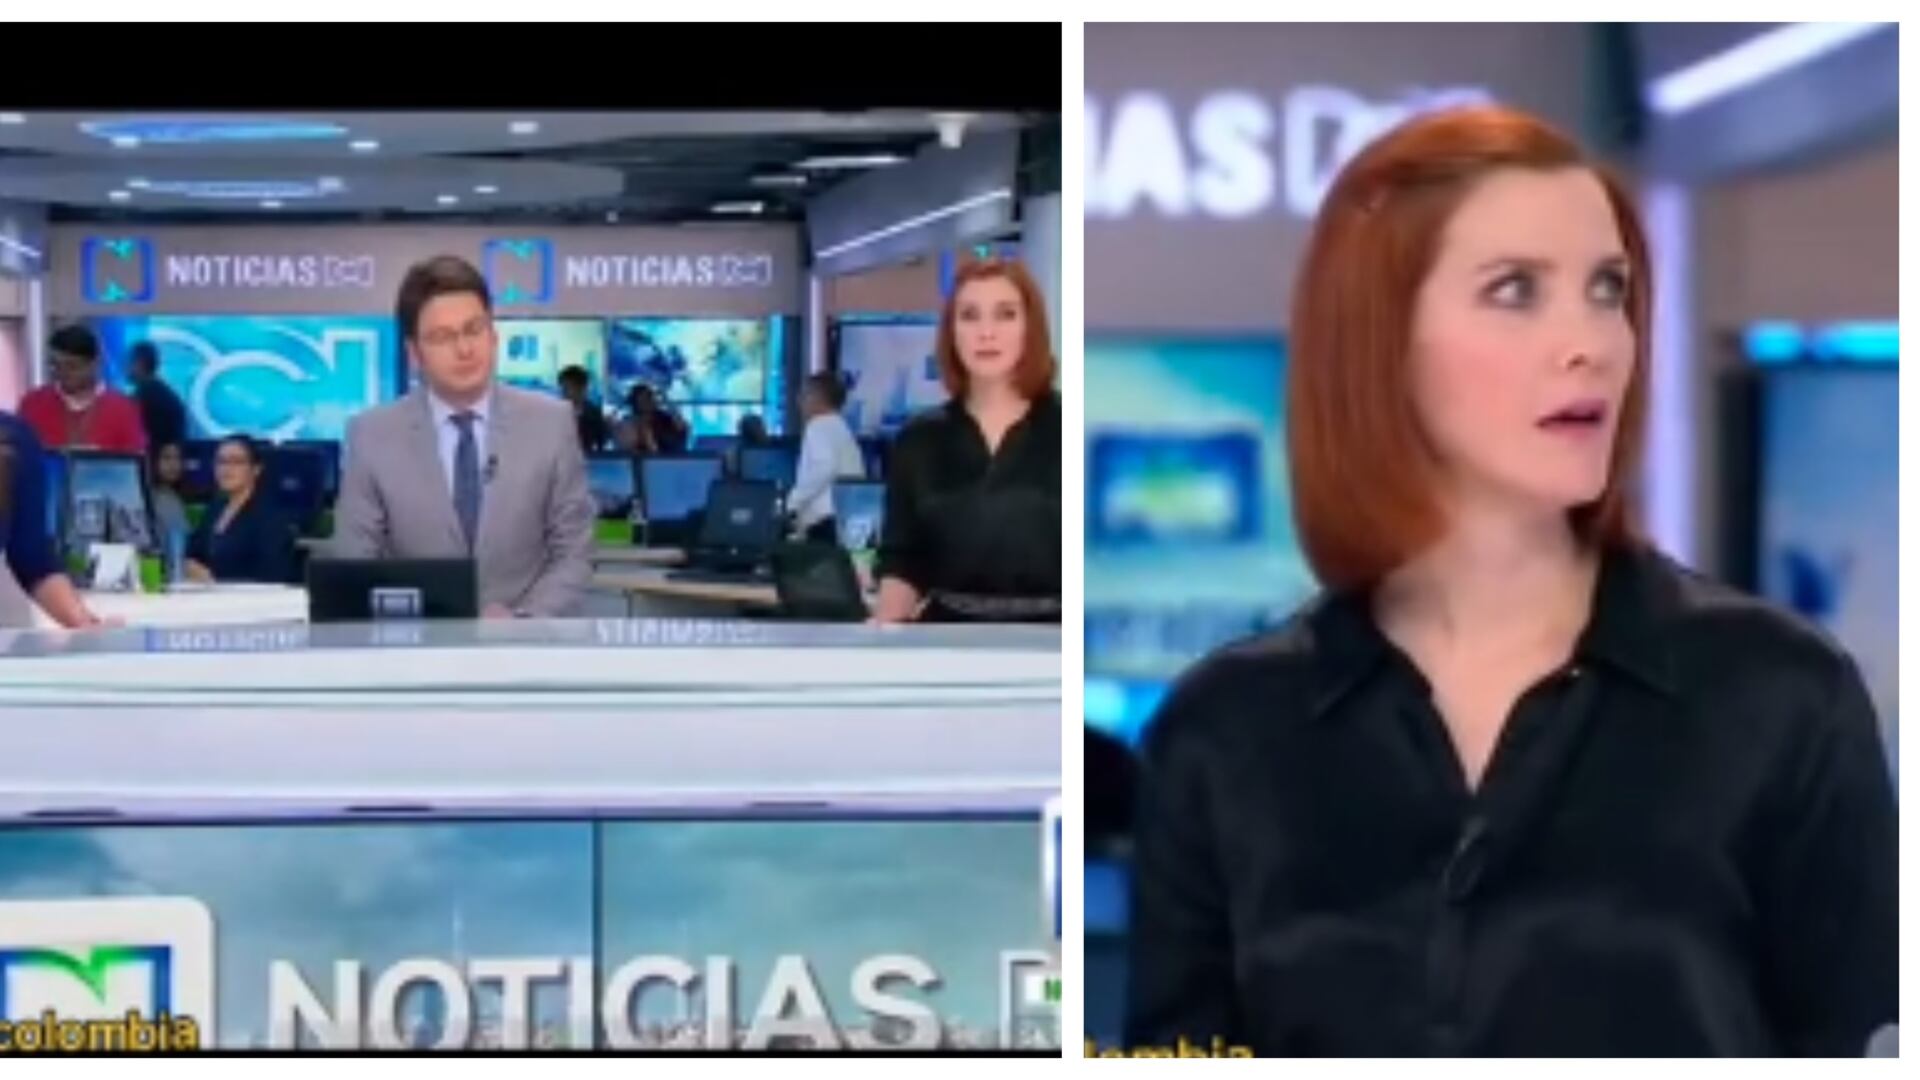 ¡Hasta pronto! A Margarita Ortega la despidieron al aire en Noticias RCN y su cara de sorpresa fue evidente (Captura de pantalla Noticias RCN)